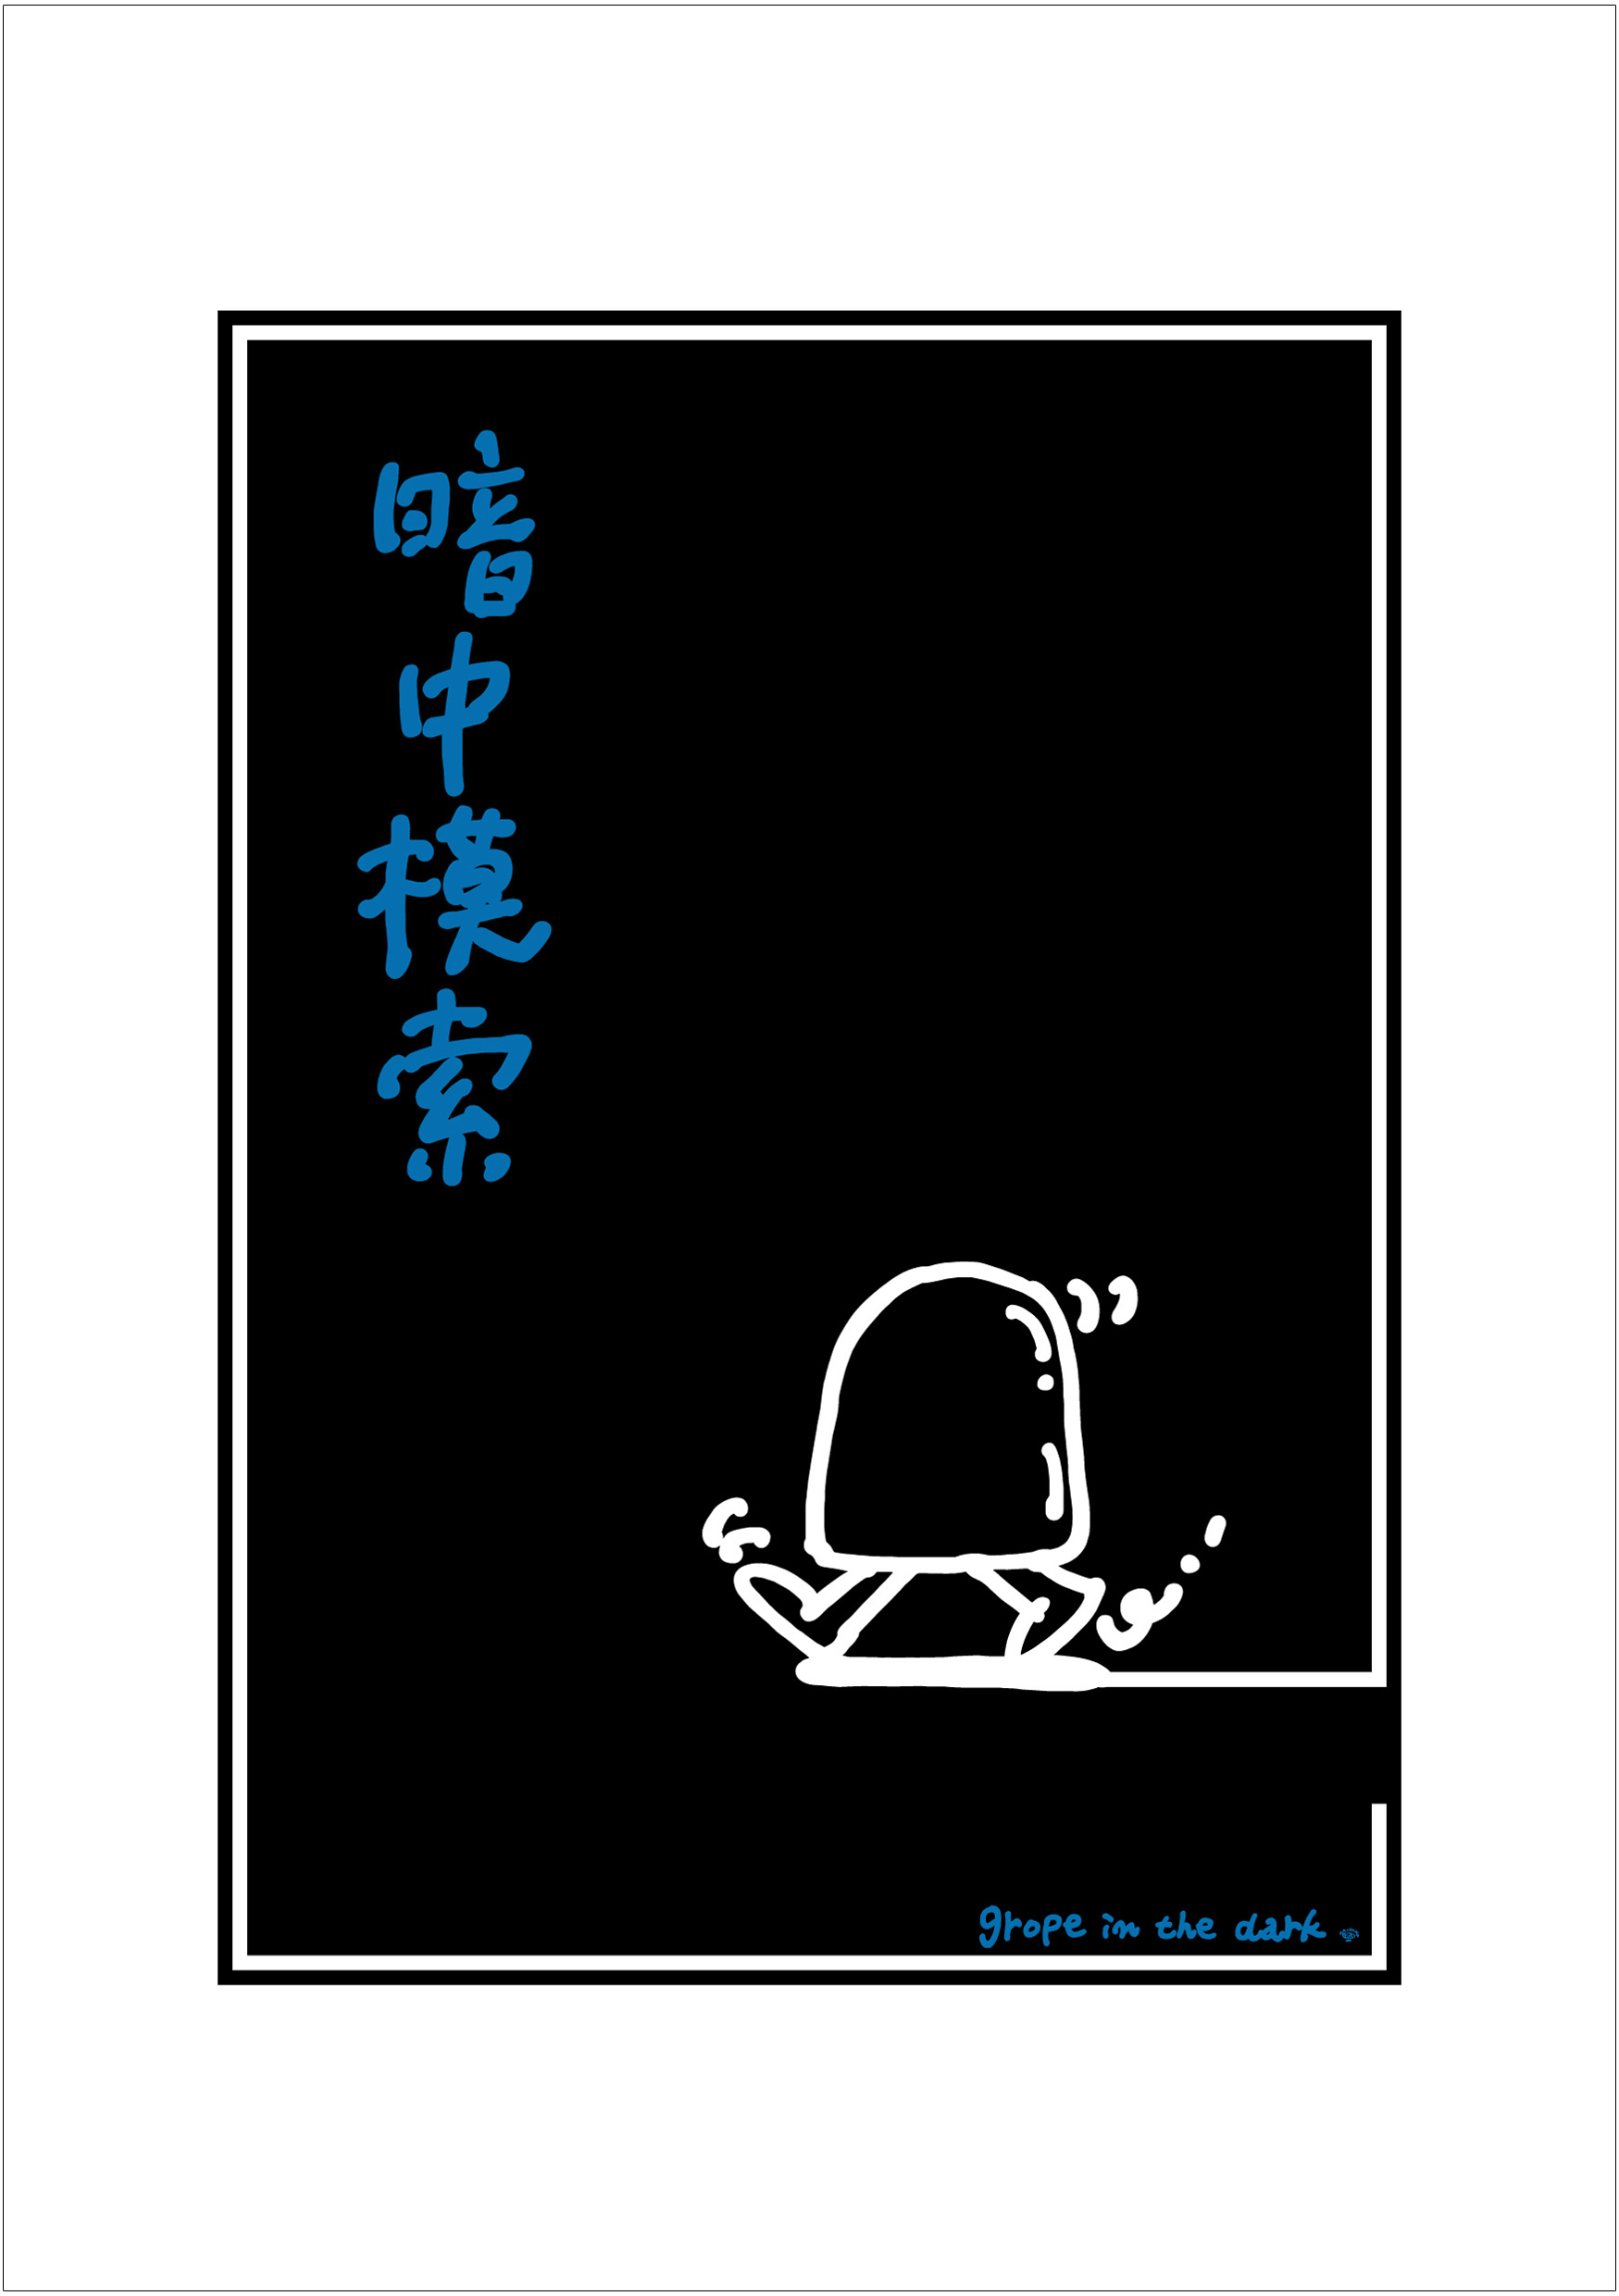 ポスターアーティスト秋山孝が2005年に制作したアートカード「アートカード ポスター 2005 10」